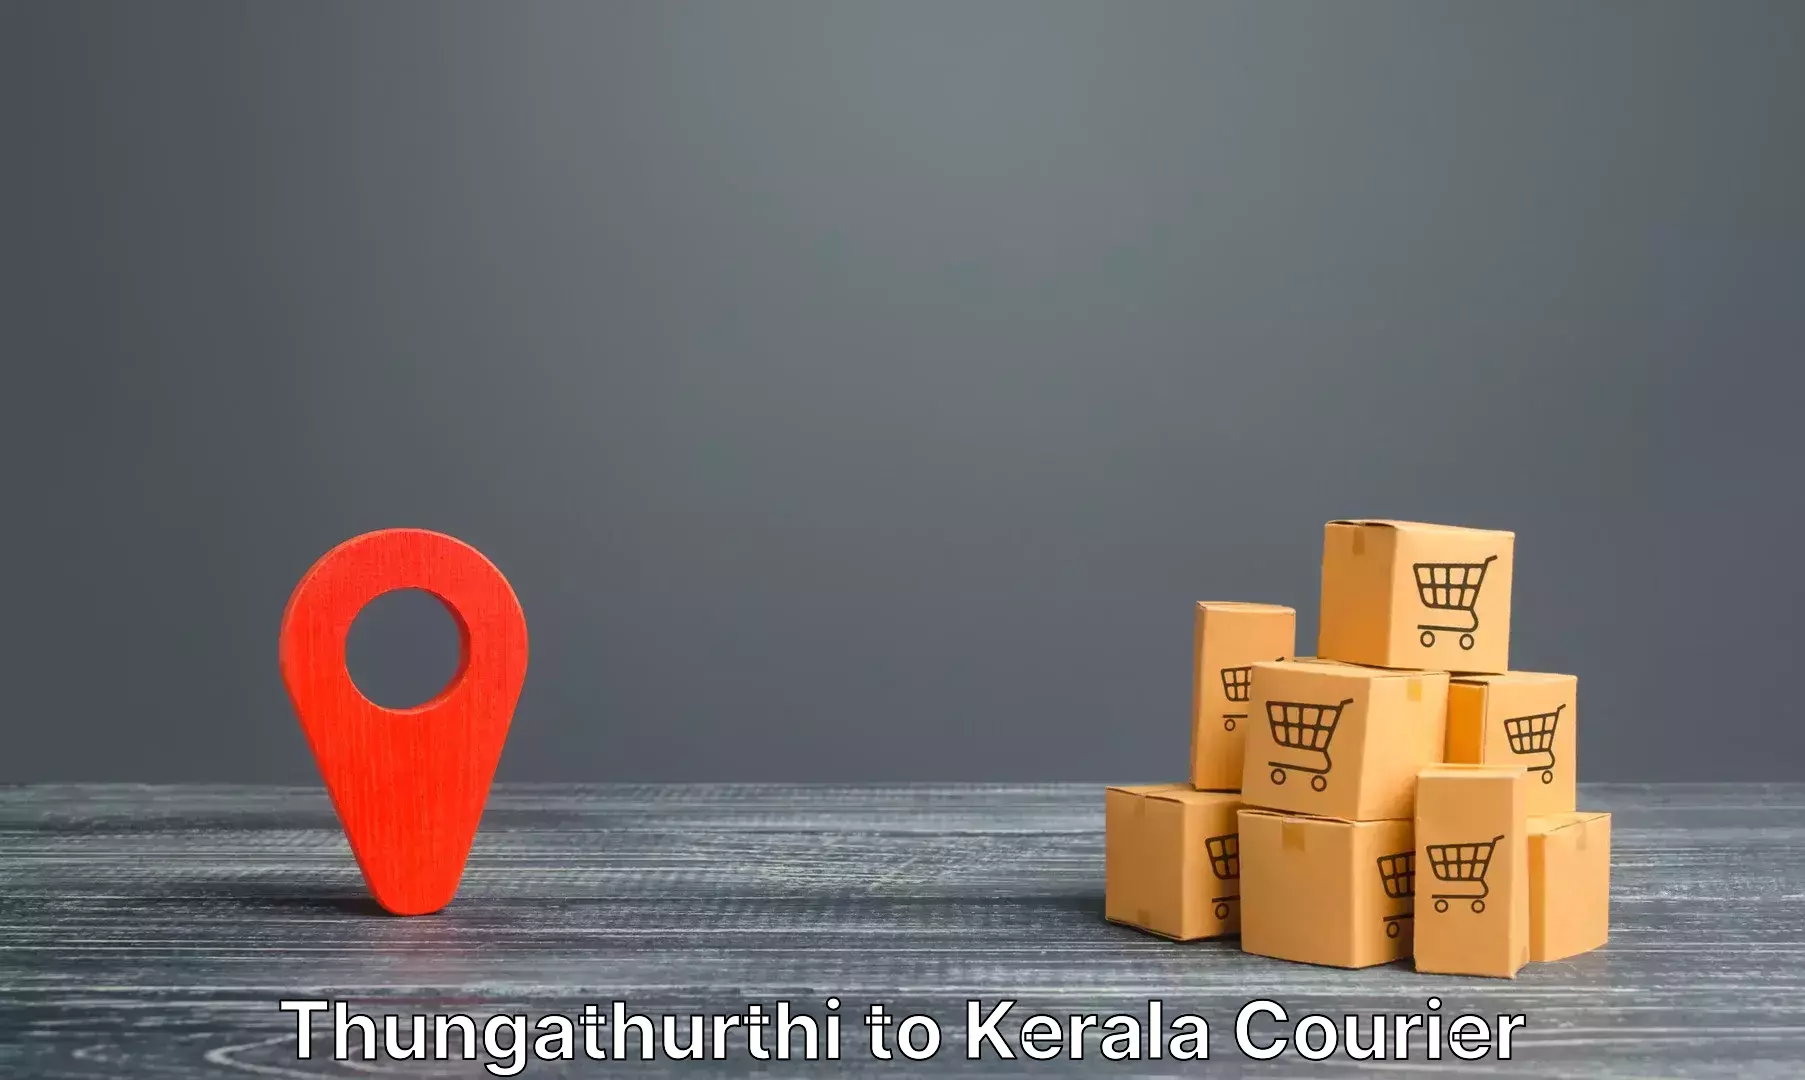 Luggage transport operations Thungathurthi to Kerala